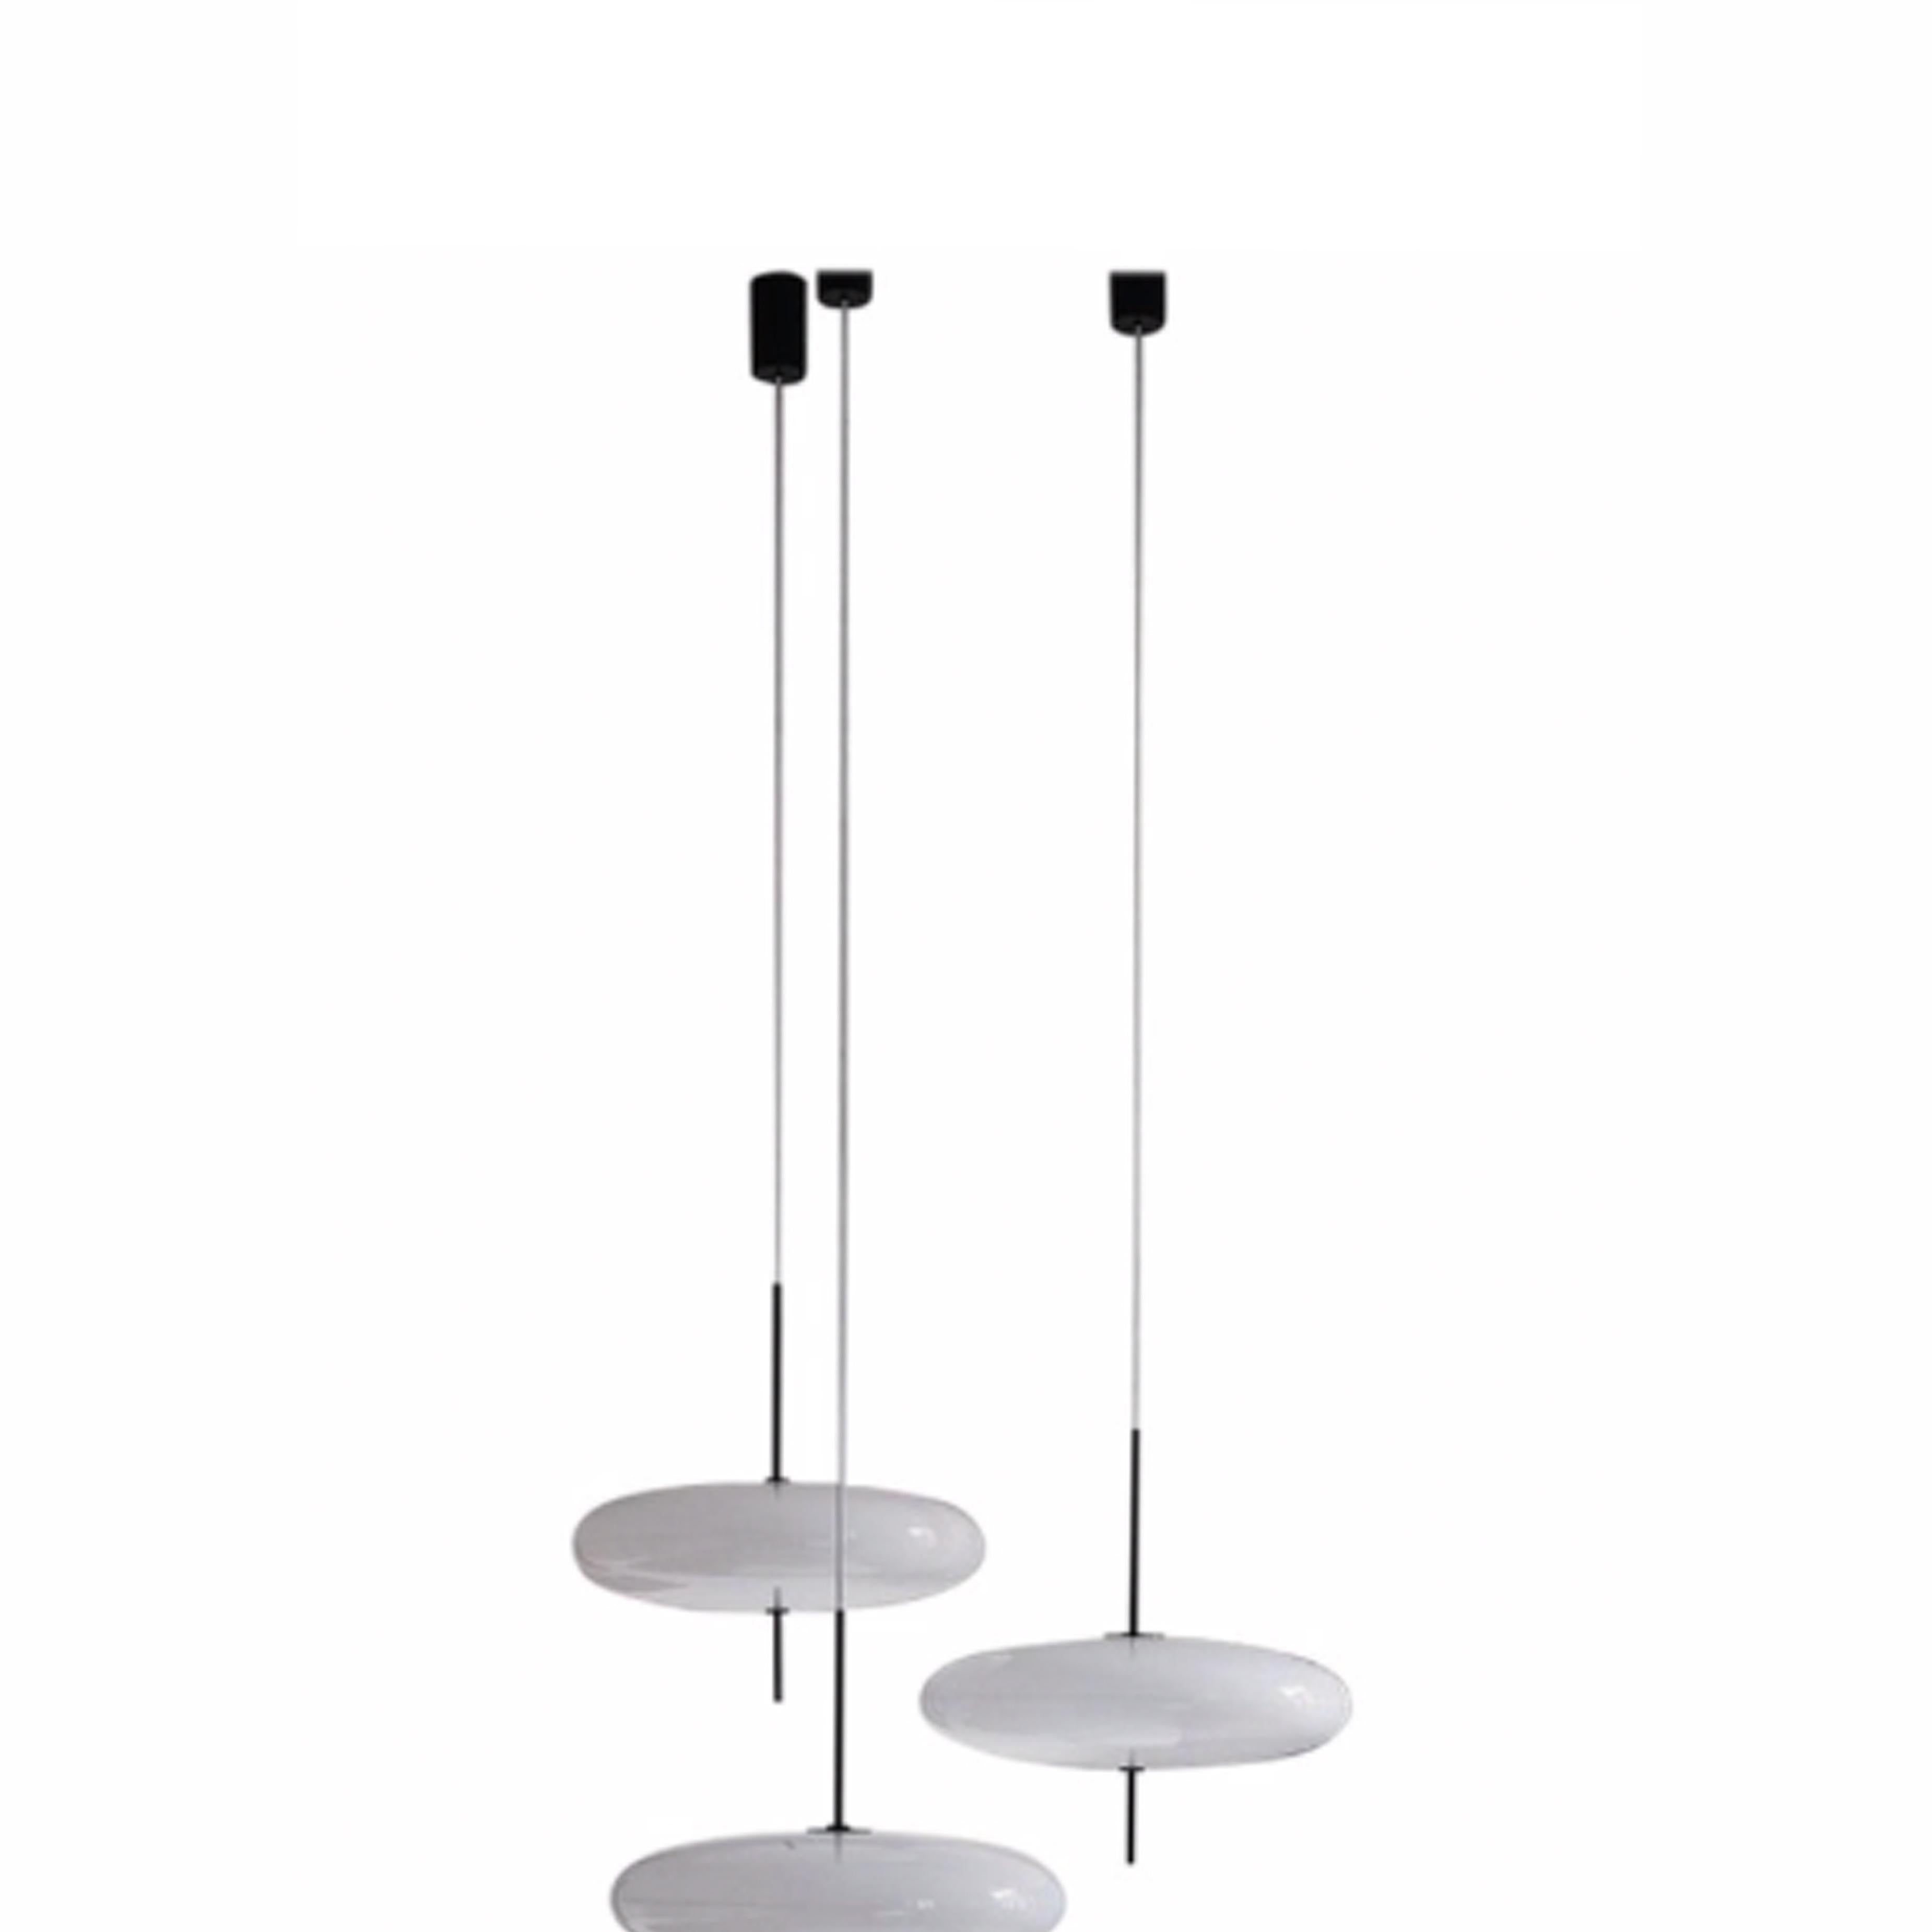 Set 3 Gino Sarfatti Lamp Model 2065 White Diffuser, Black Hardware  In New Condition For Sale In Barcelona, Barcelona